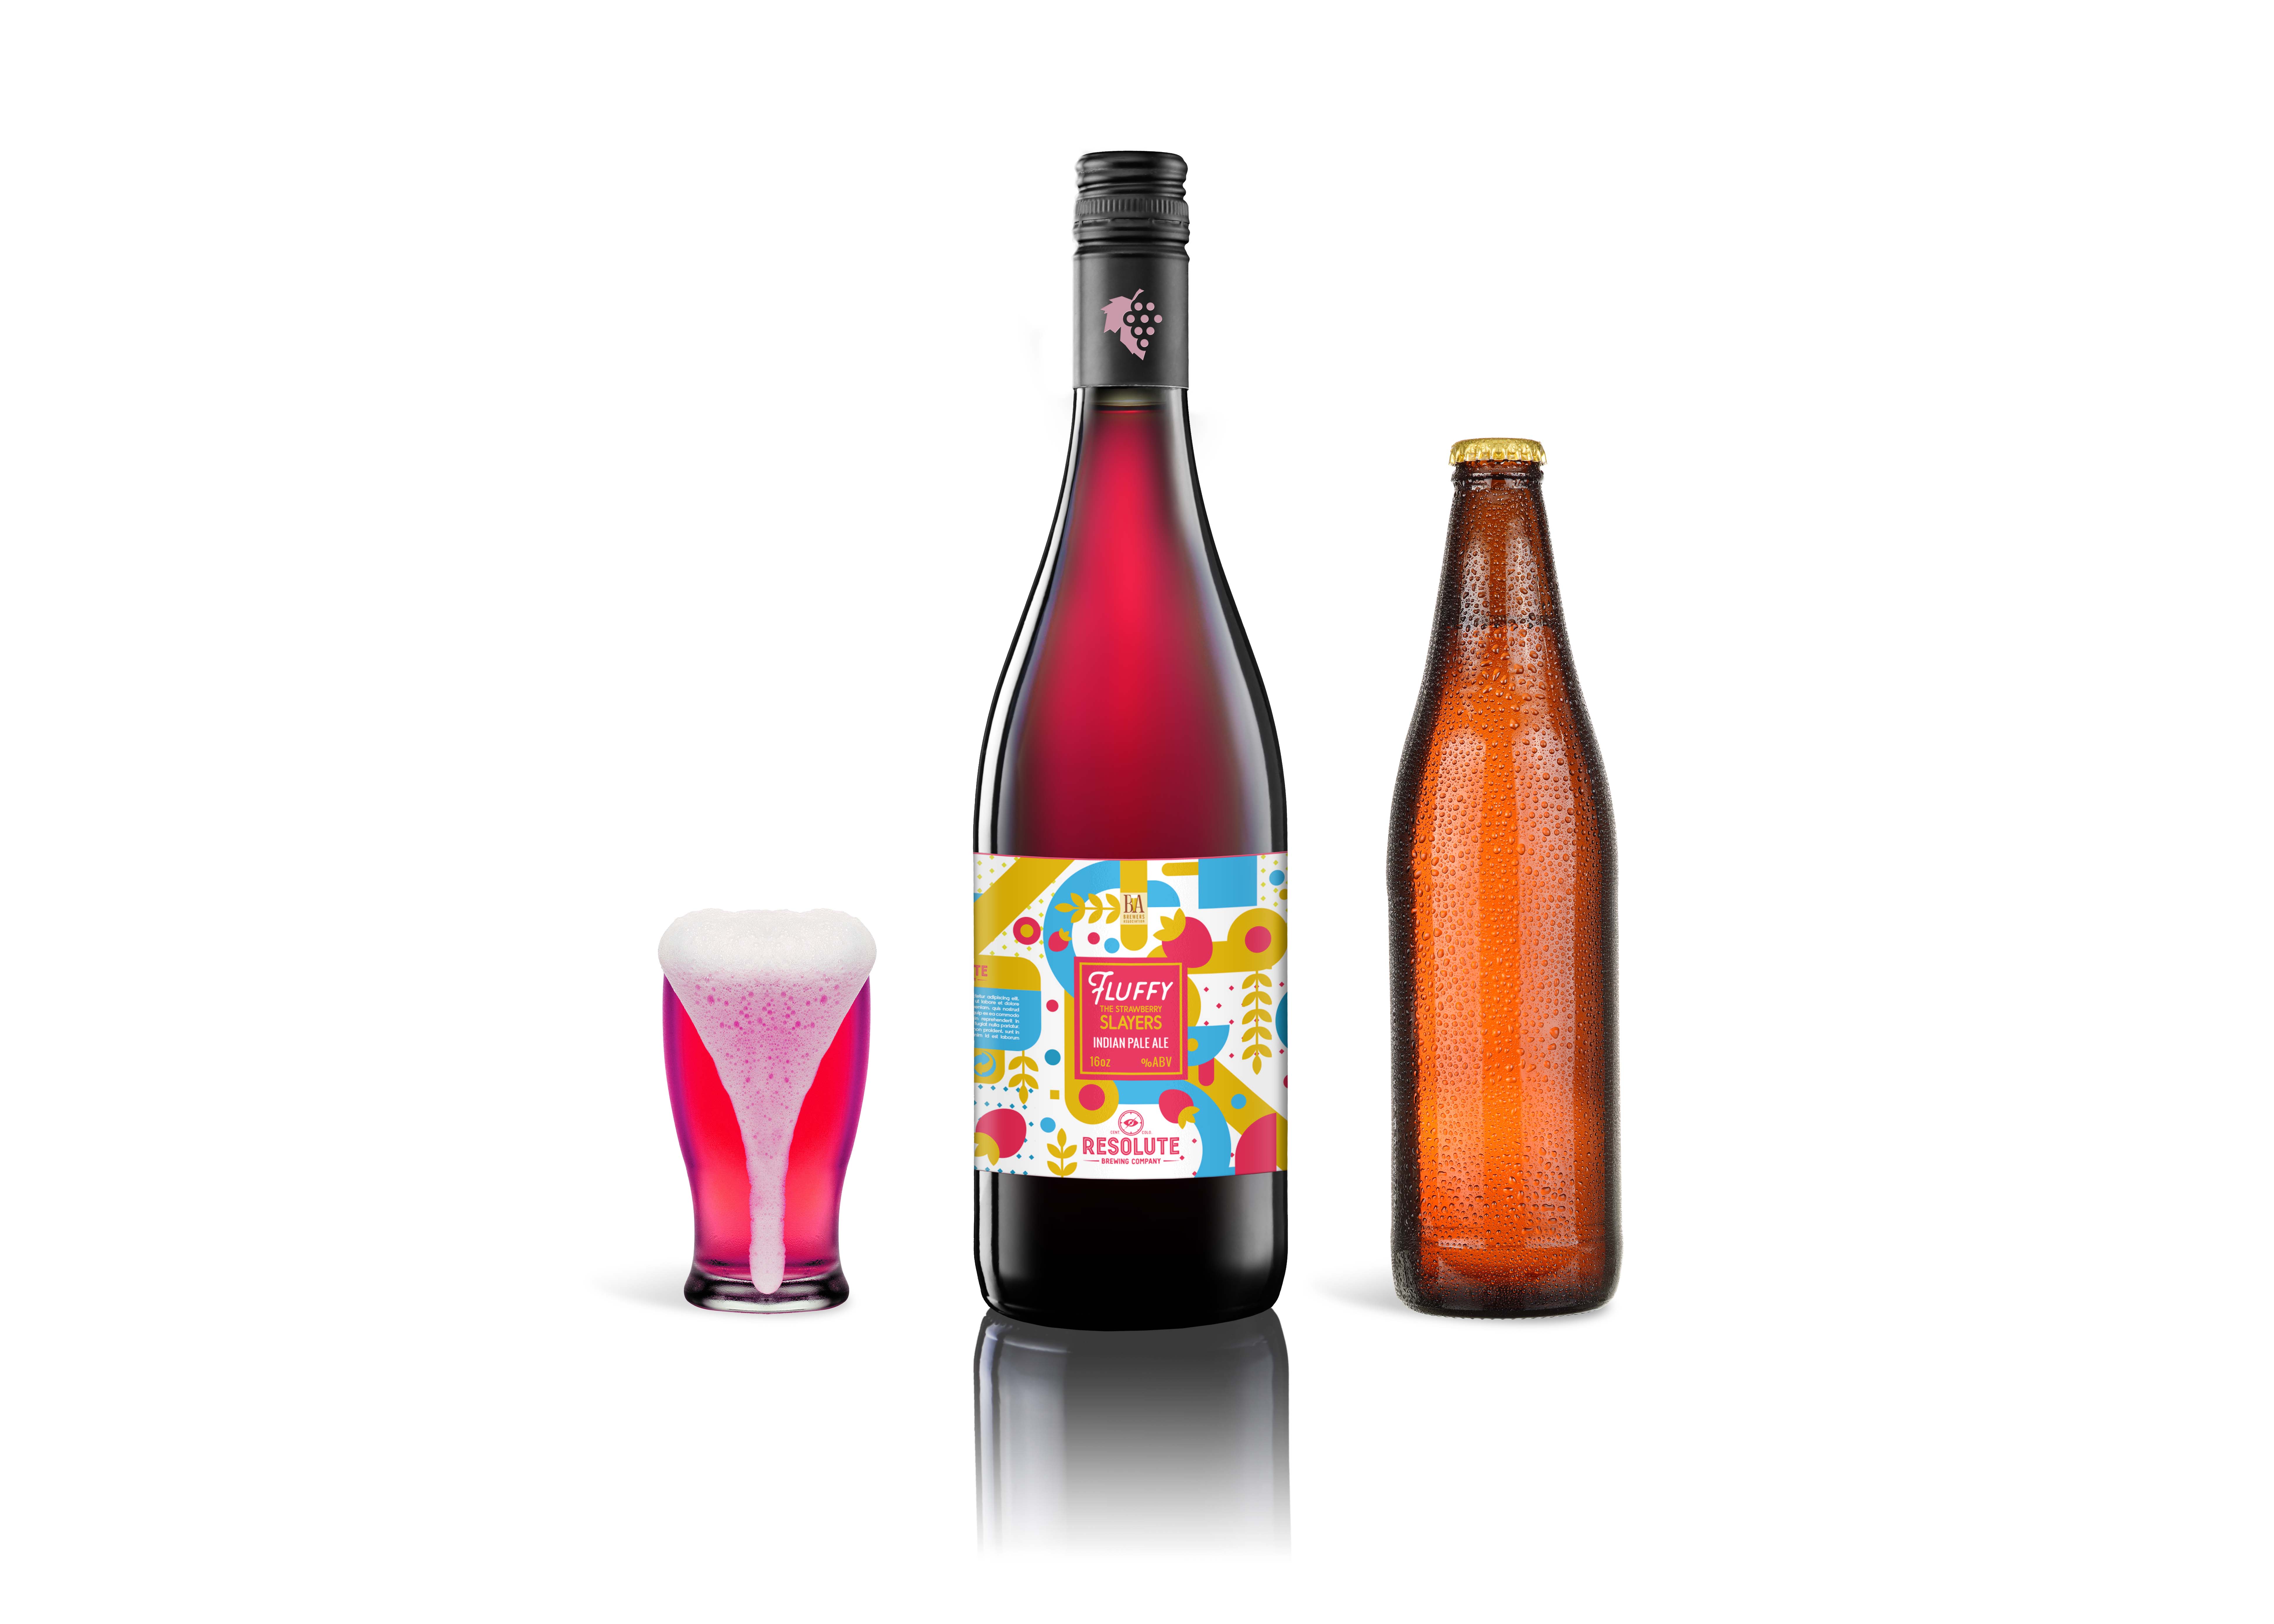 Download Branded Red Wine Bottle Label Mockup | Free PSD Mockup ...